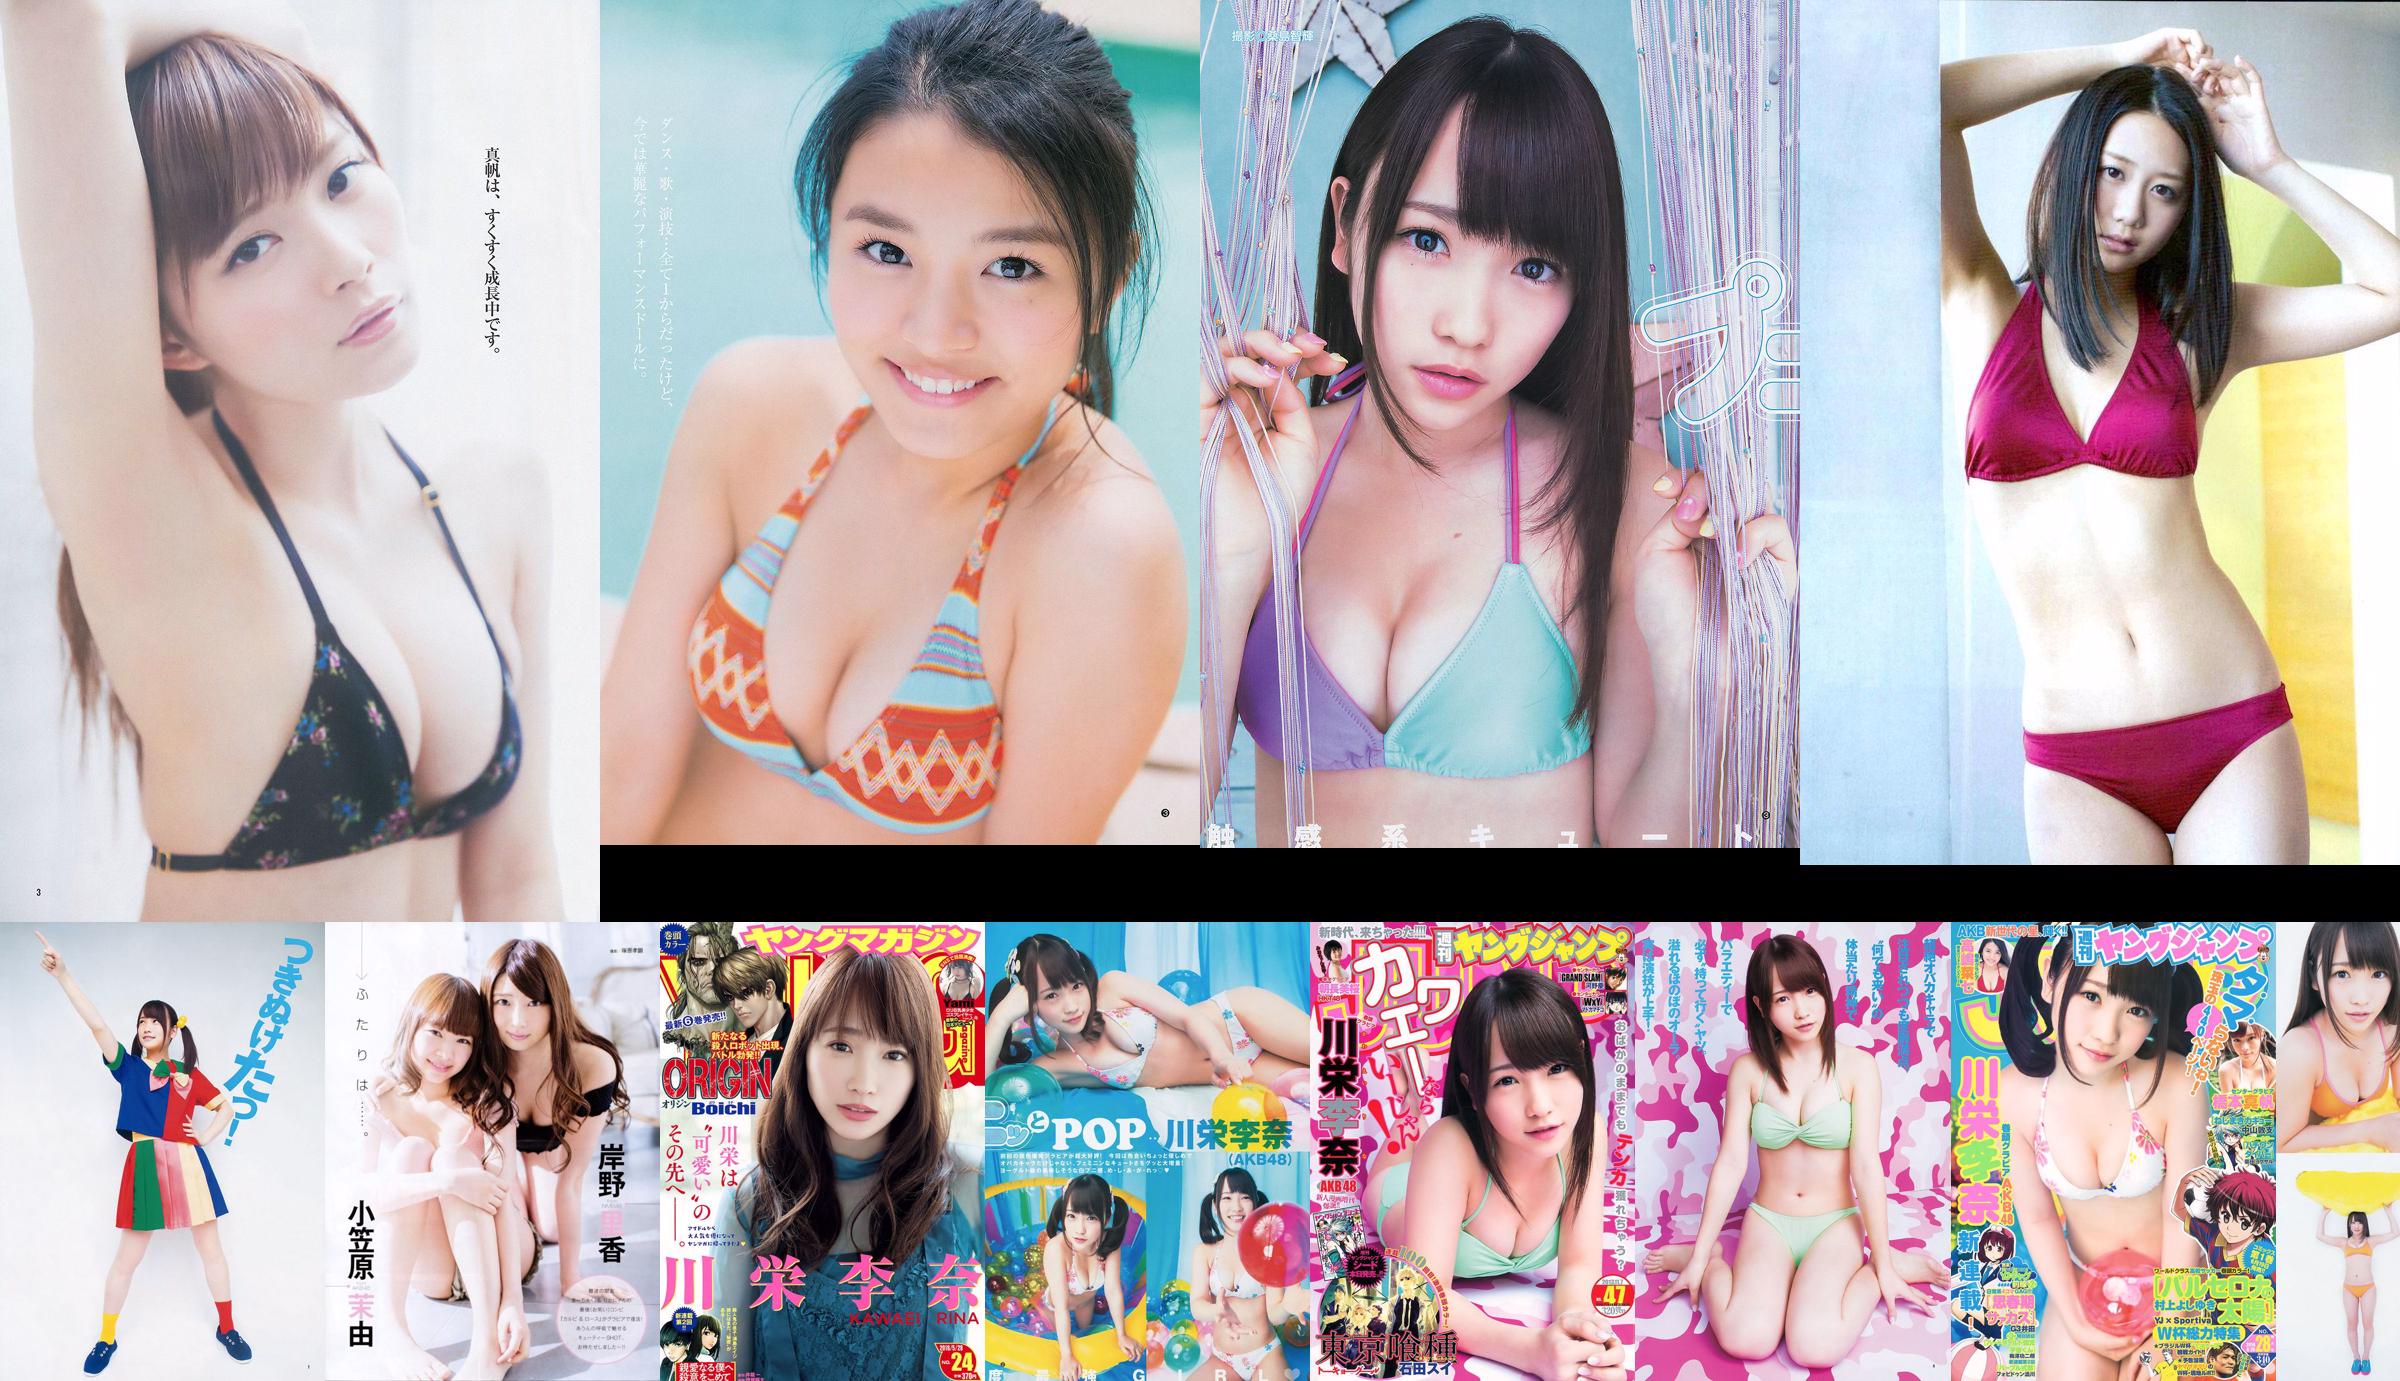 [ENTAME] Kawaei Rina Furuhata Naka e Kishino Rika junho de 2014 Photo Magazine No.136ff0 Página 1